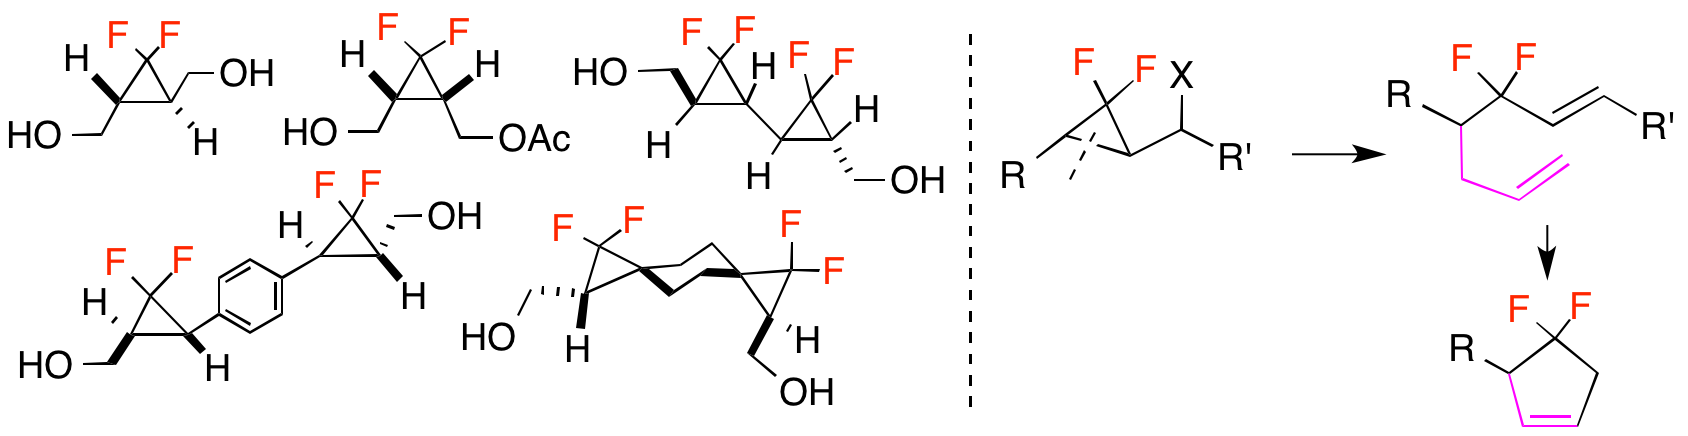 gem-ジフルオロシクロプロパン誘導体の合成、機能材料と医薬応用